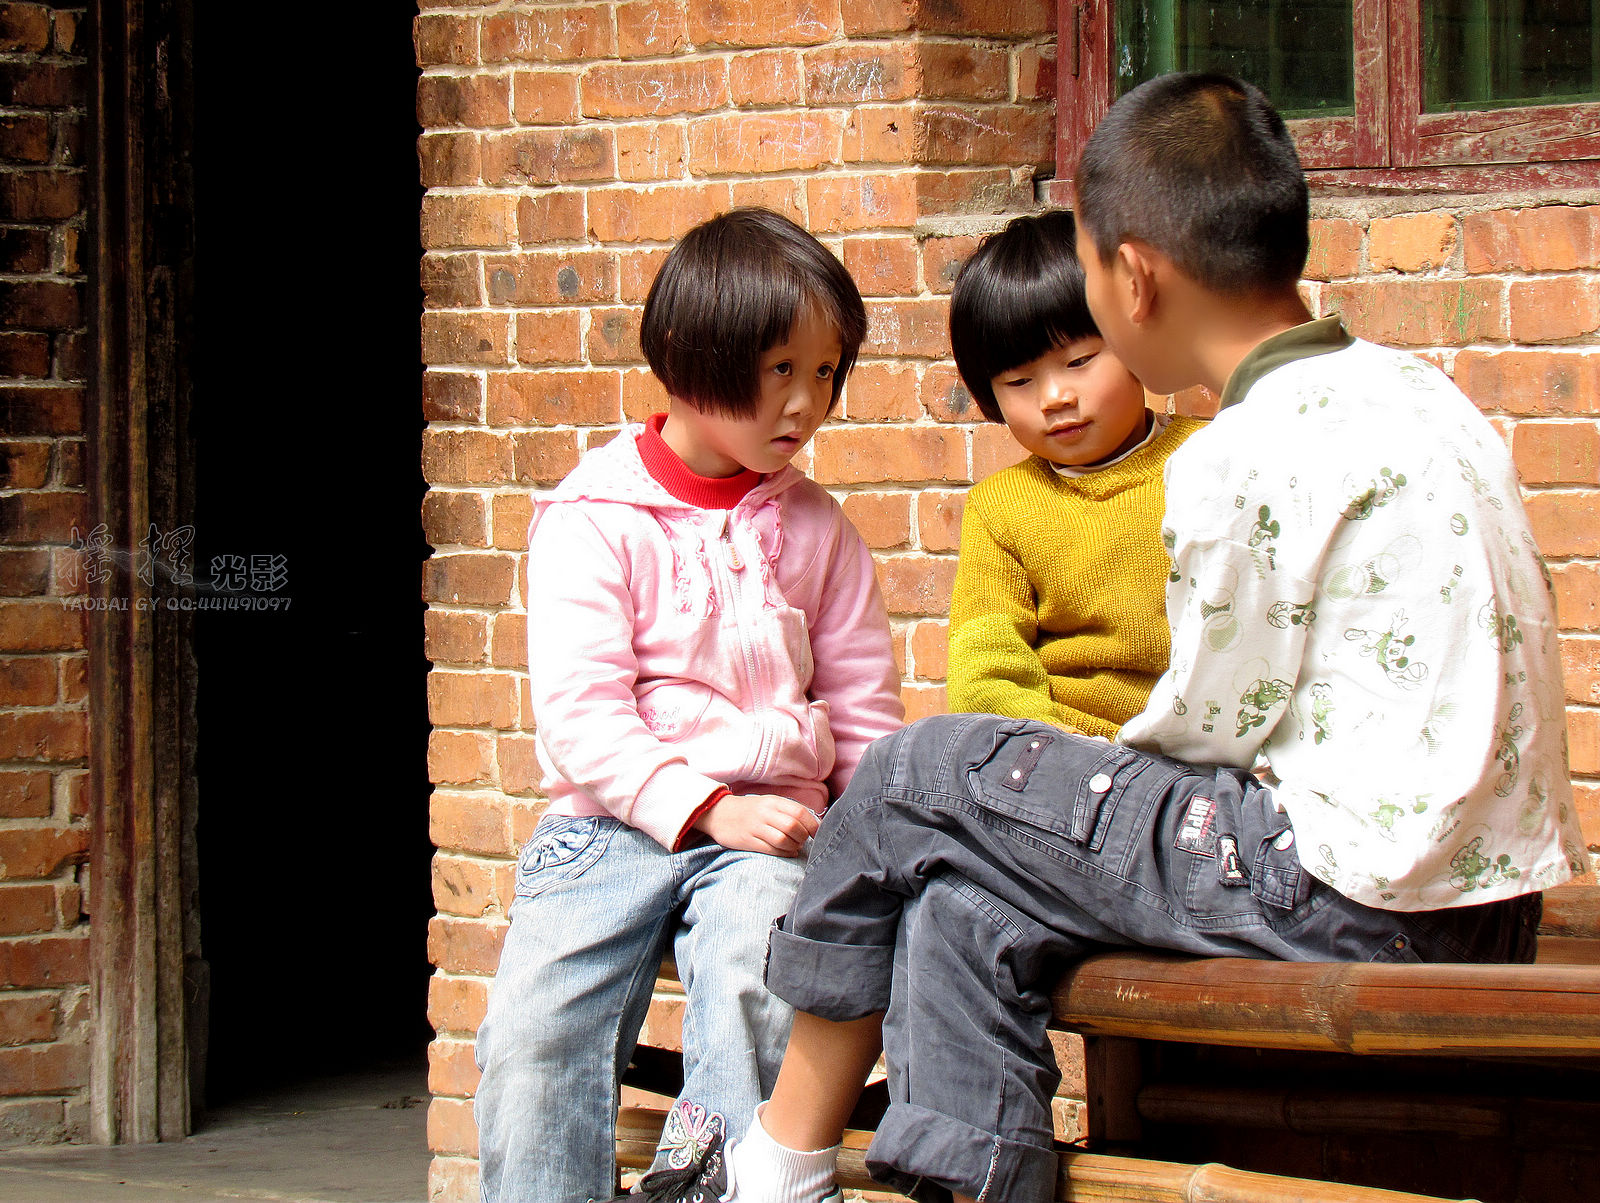 小女孩和老人在户外-蓝牛仔影像-中国原创广告影像素材